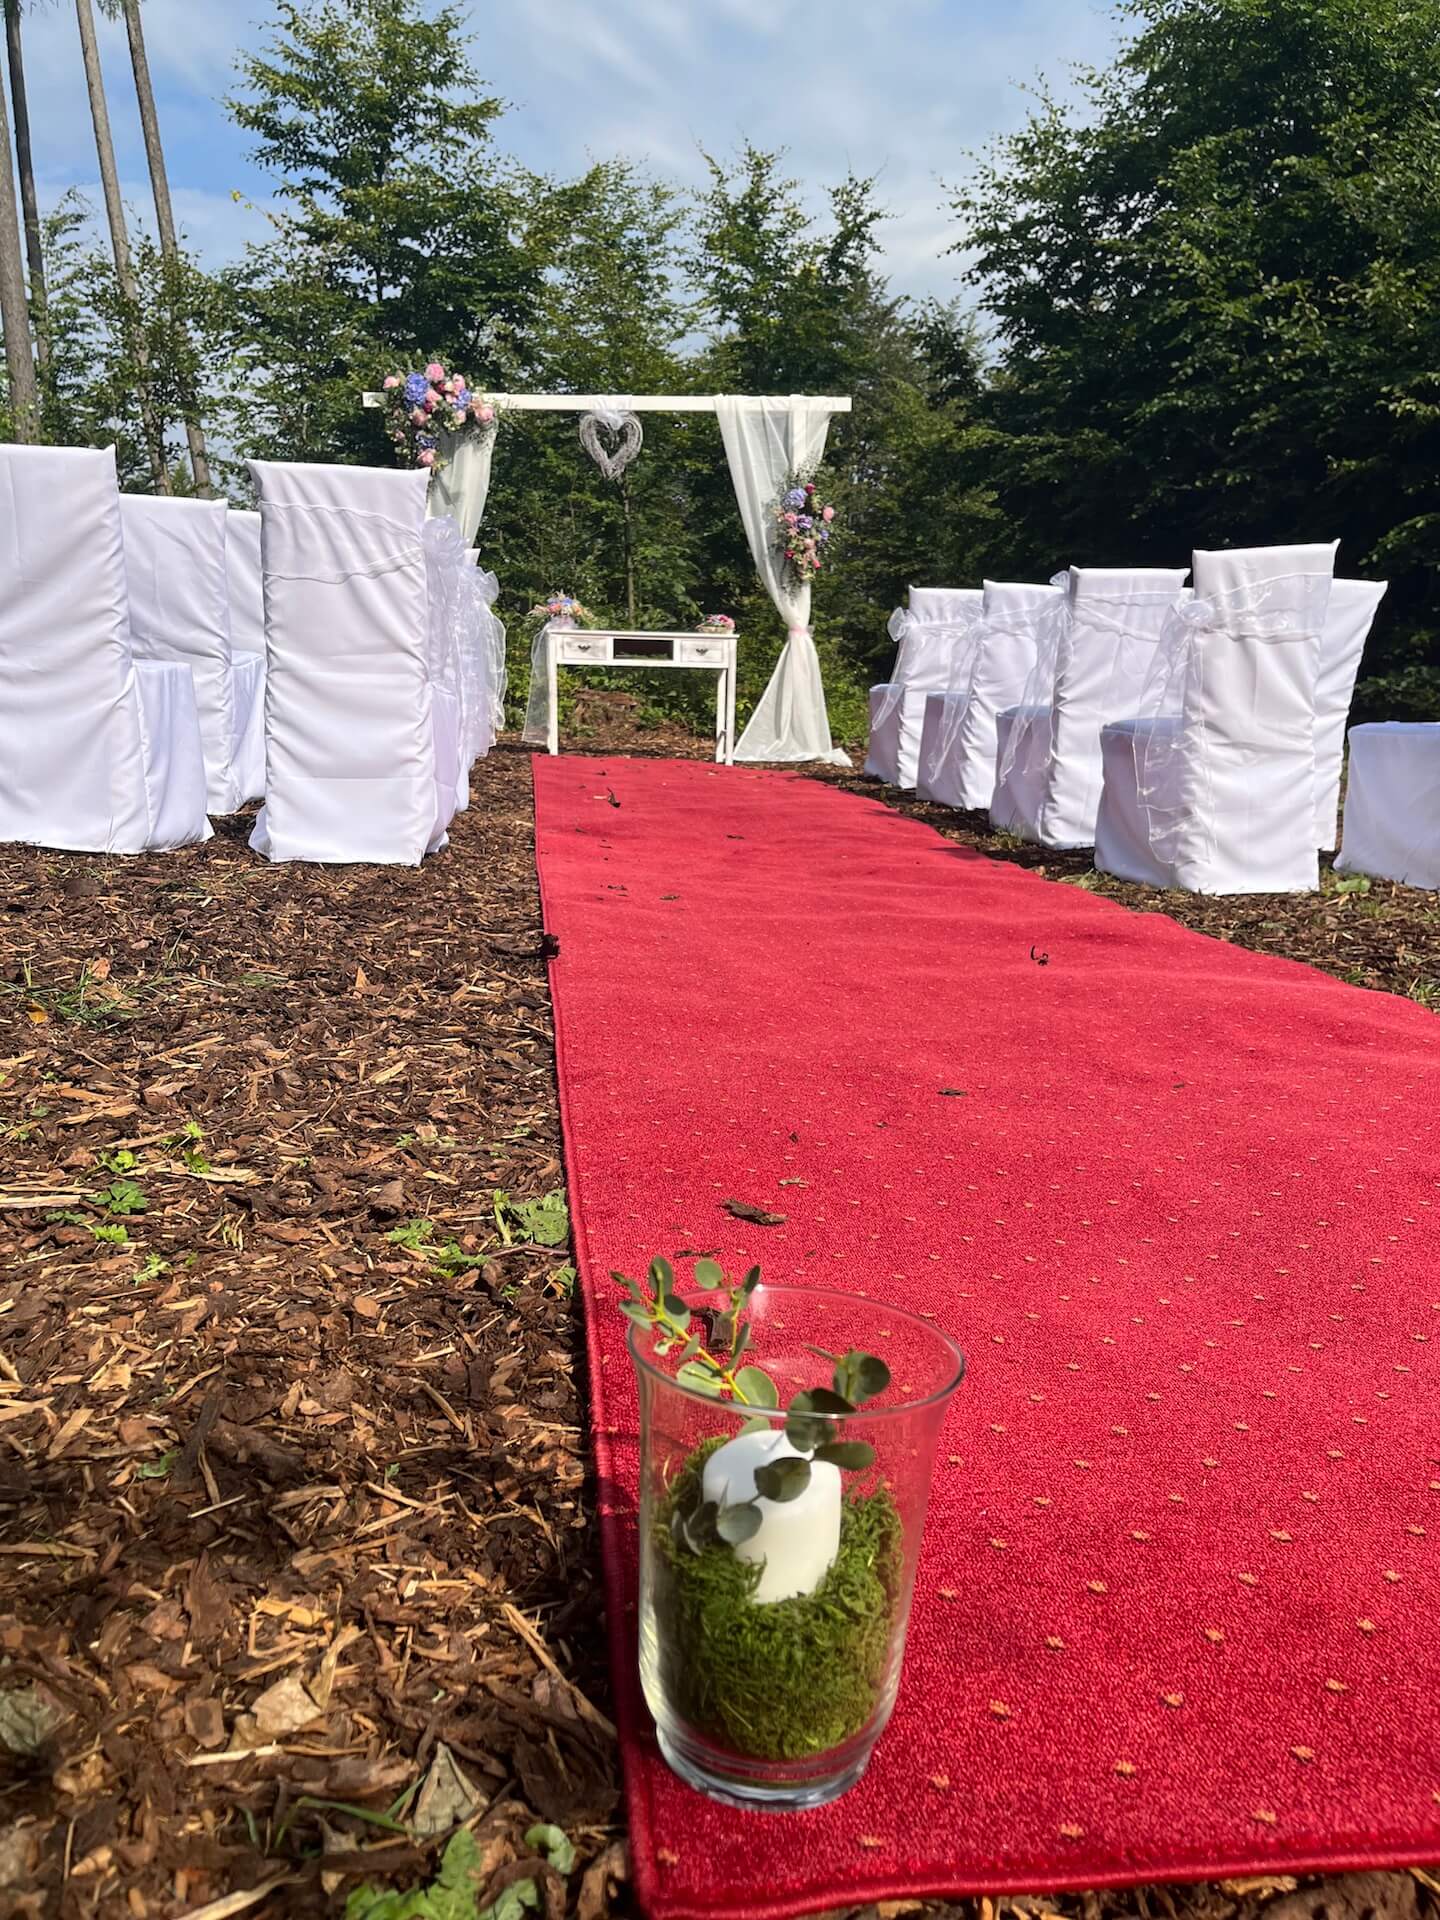 Liberecká výšina, venkovní svatební obřad, červený koberec